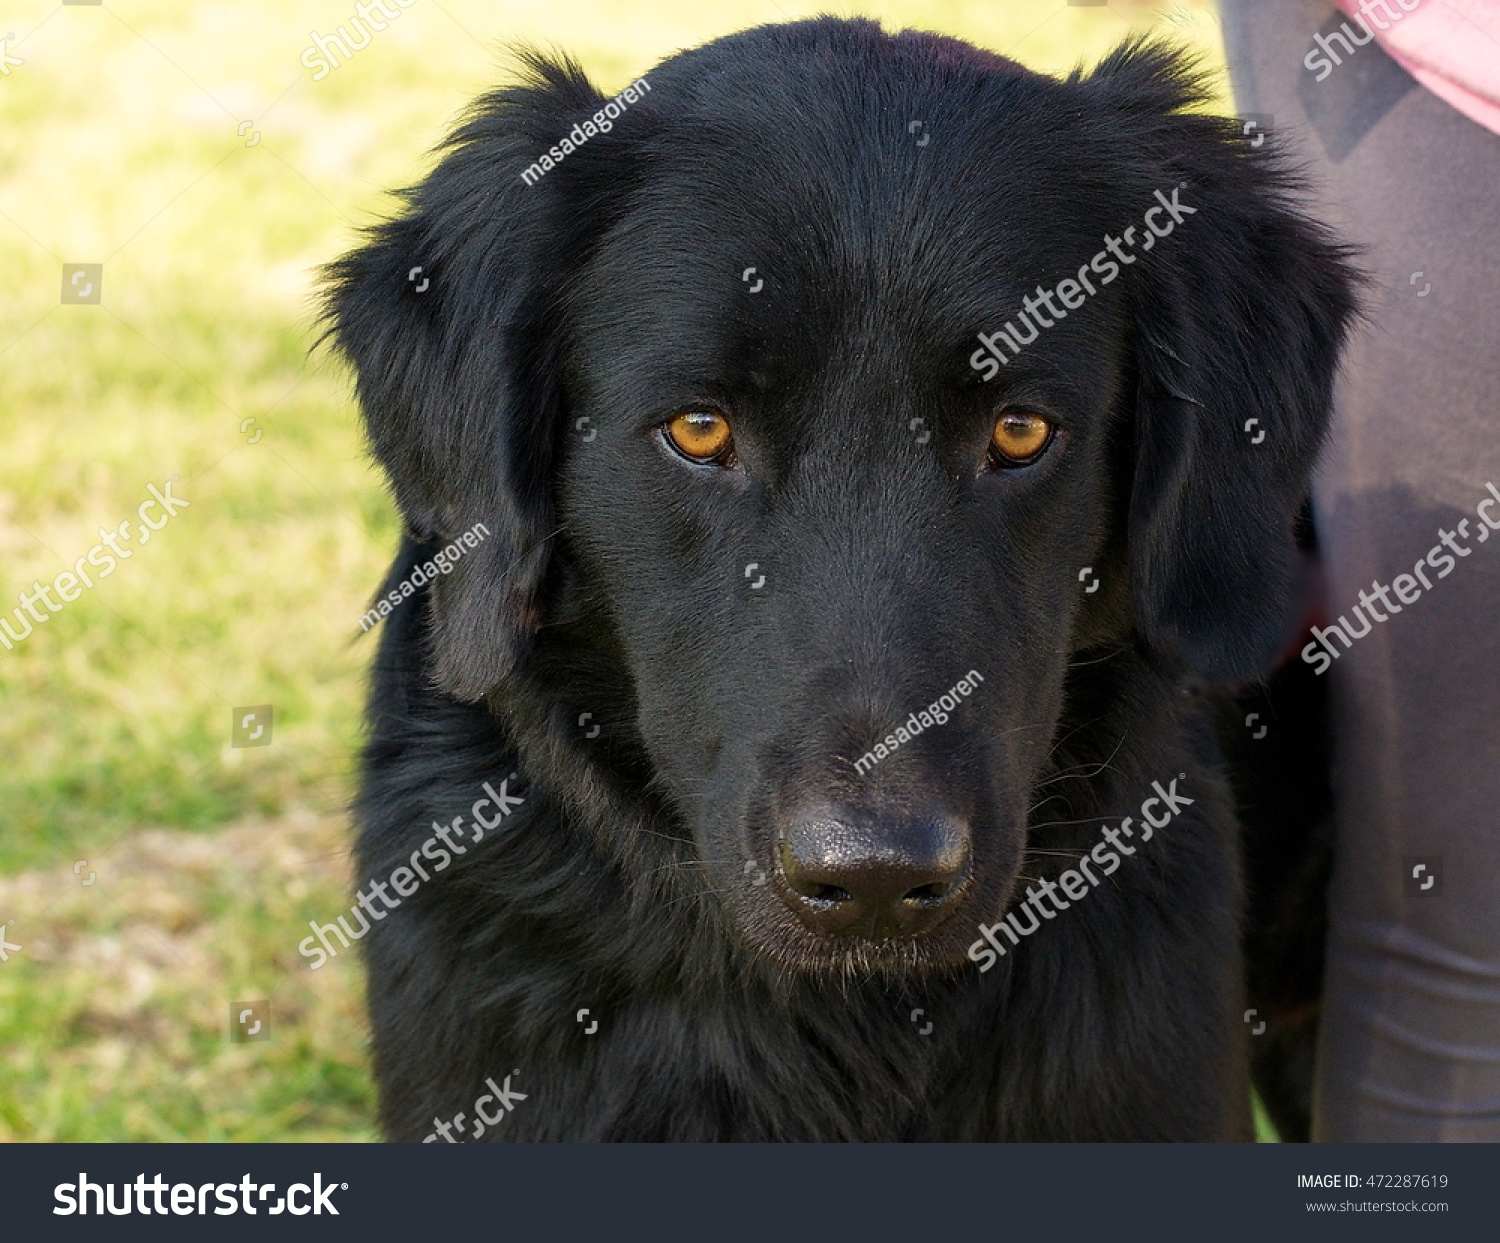 big black fluffy dog